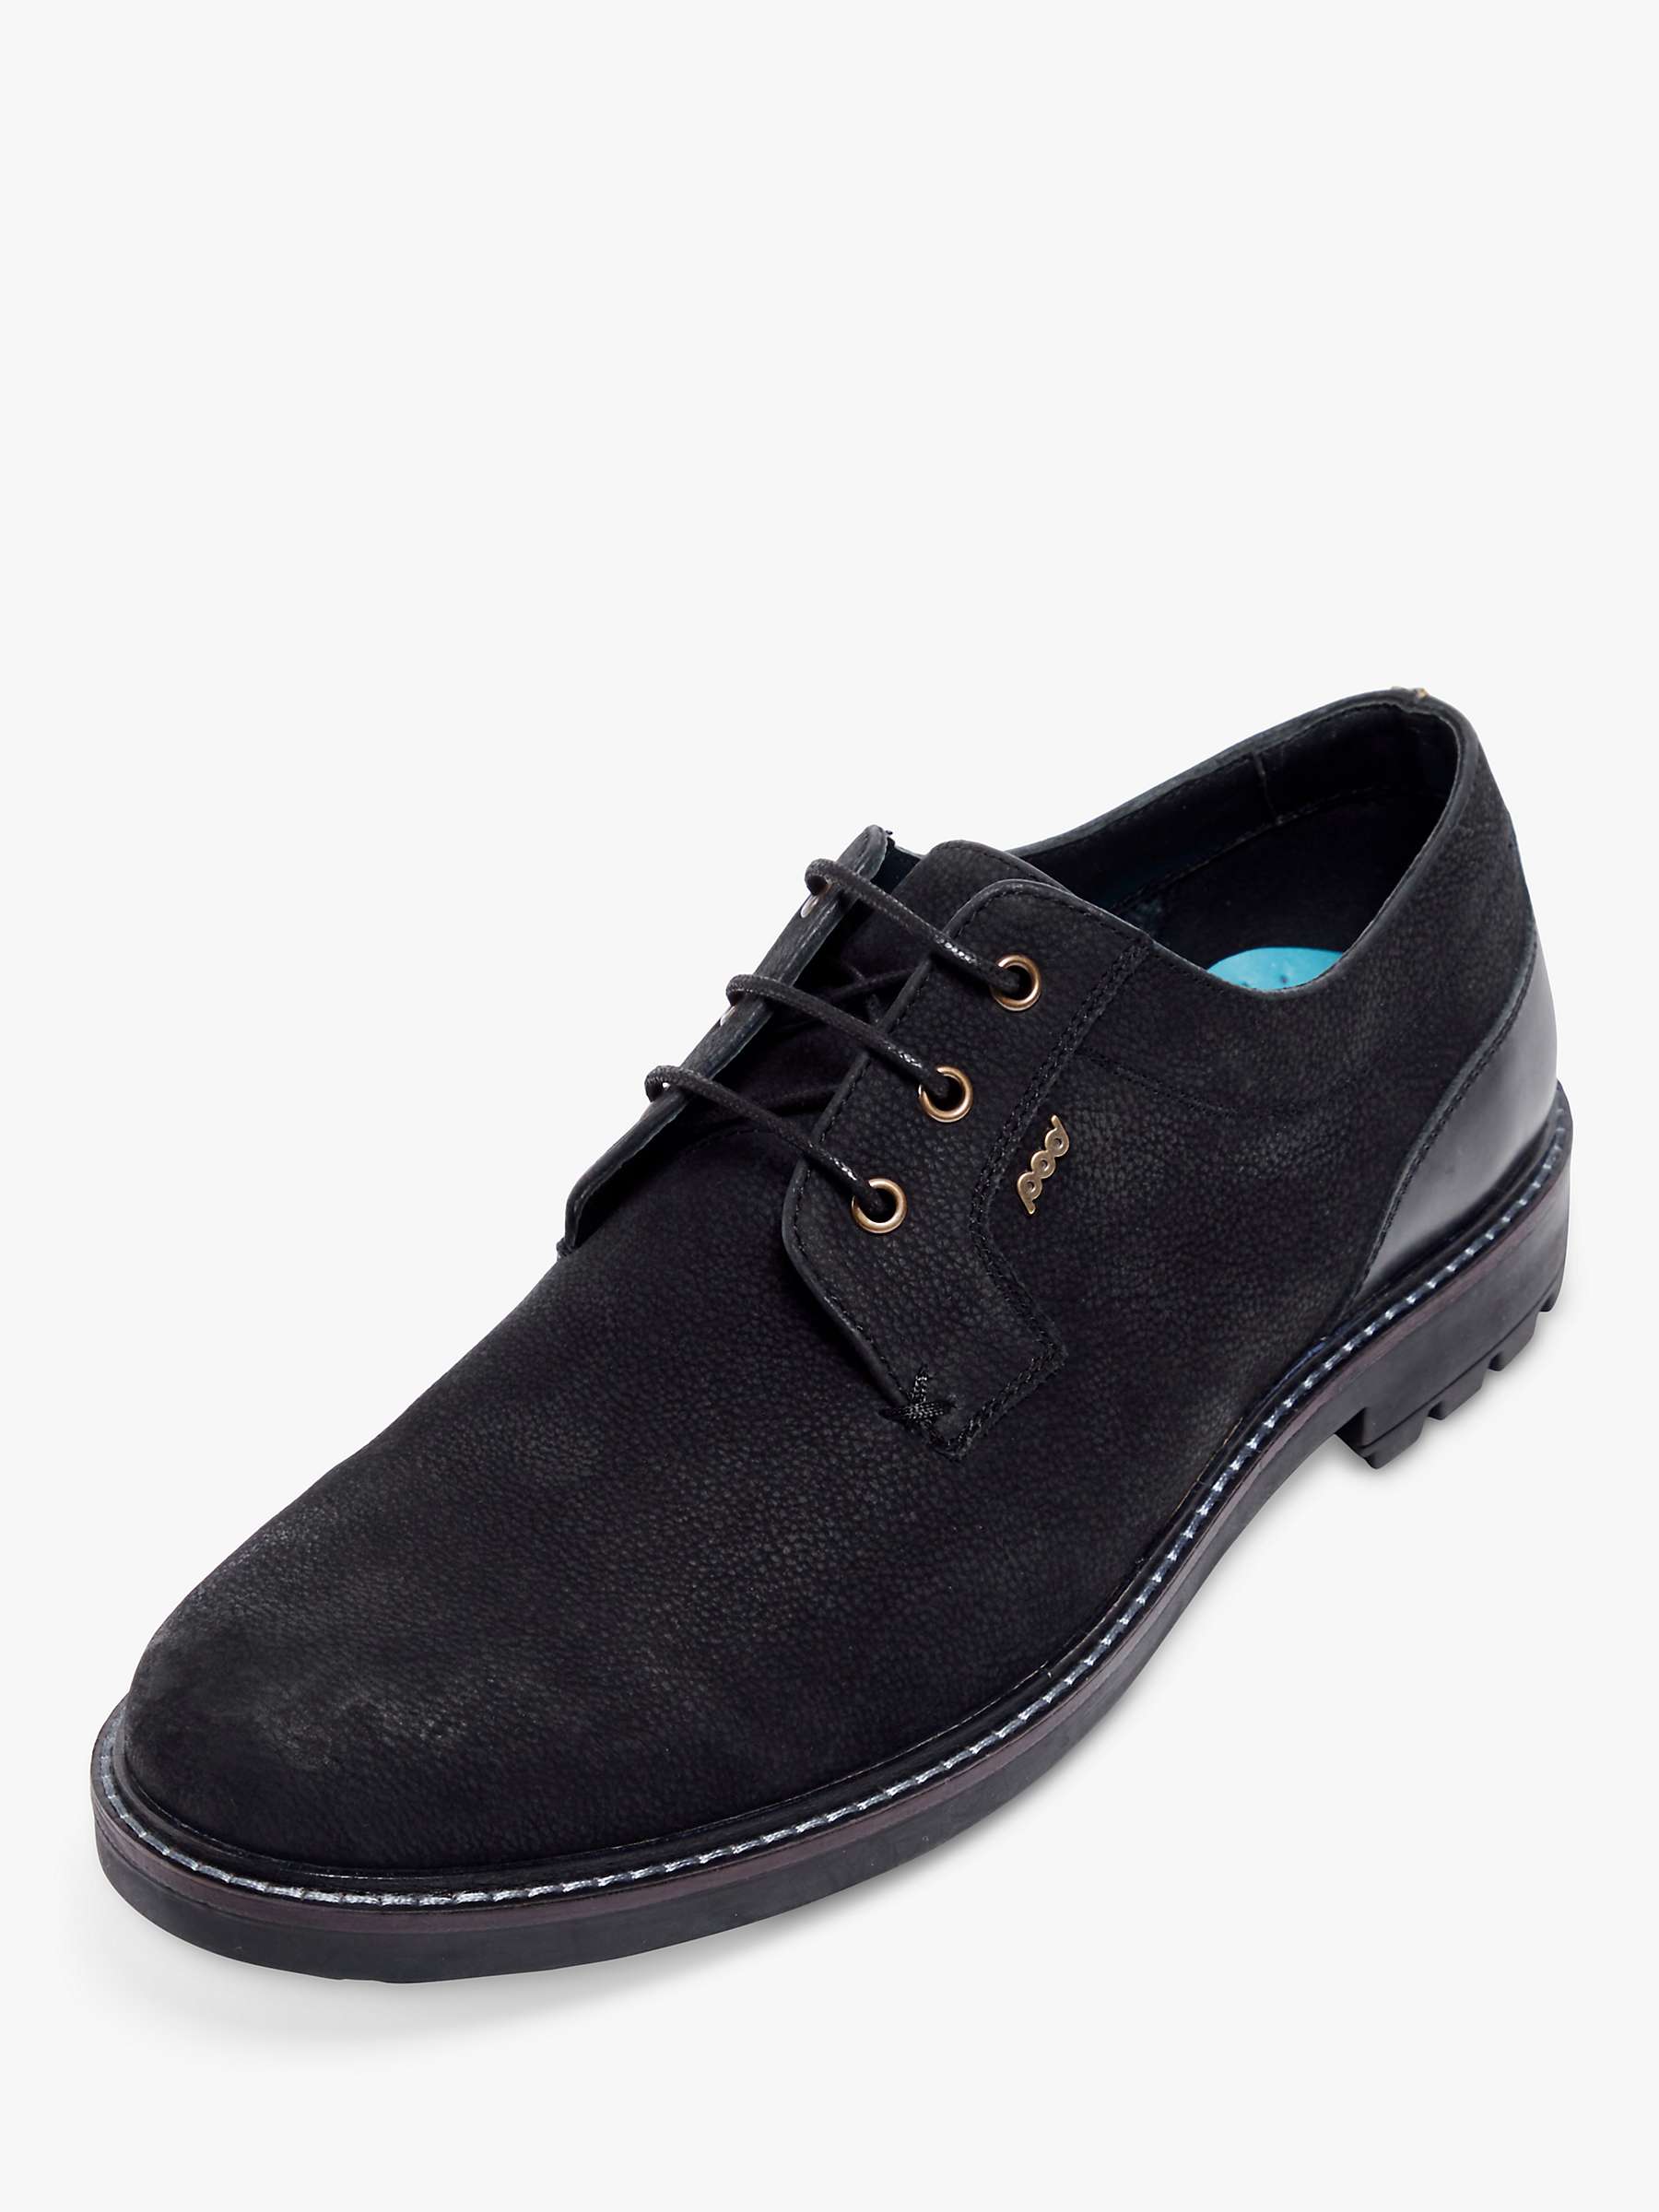 Buy Pod Samuel Derby Shoes, Black Online at johnlewis.com